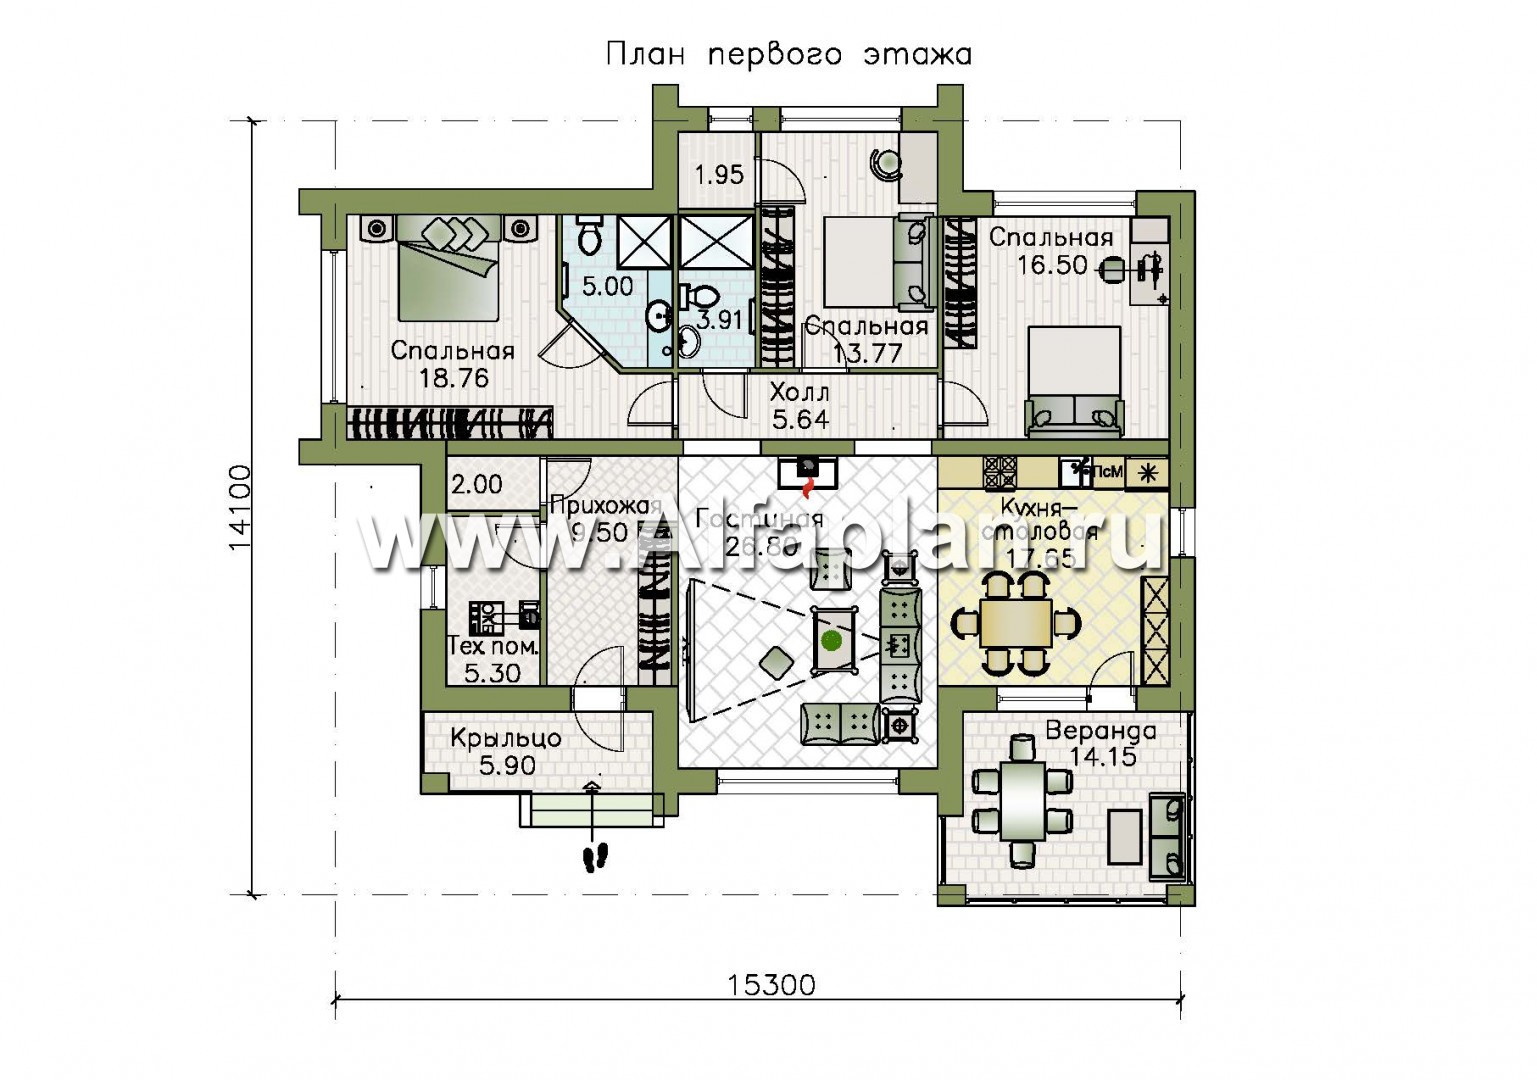 «Магнолия» — красивый проект одноэтажного дома, планировка 3 спальни, современный стиль, фасад из кирпича - план дома